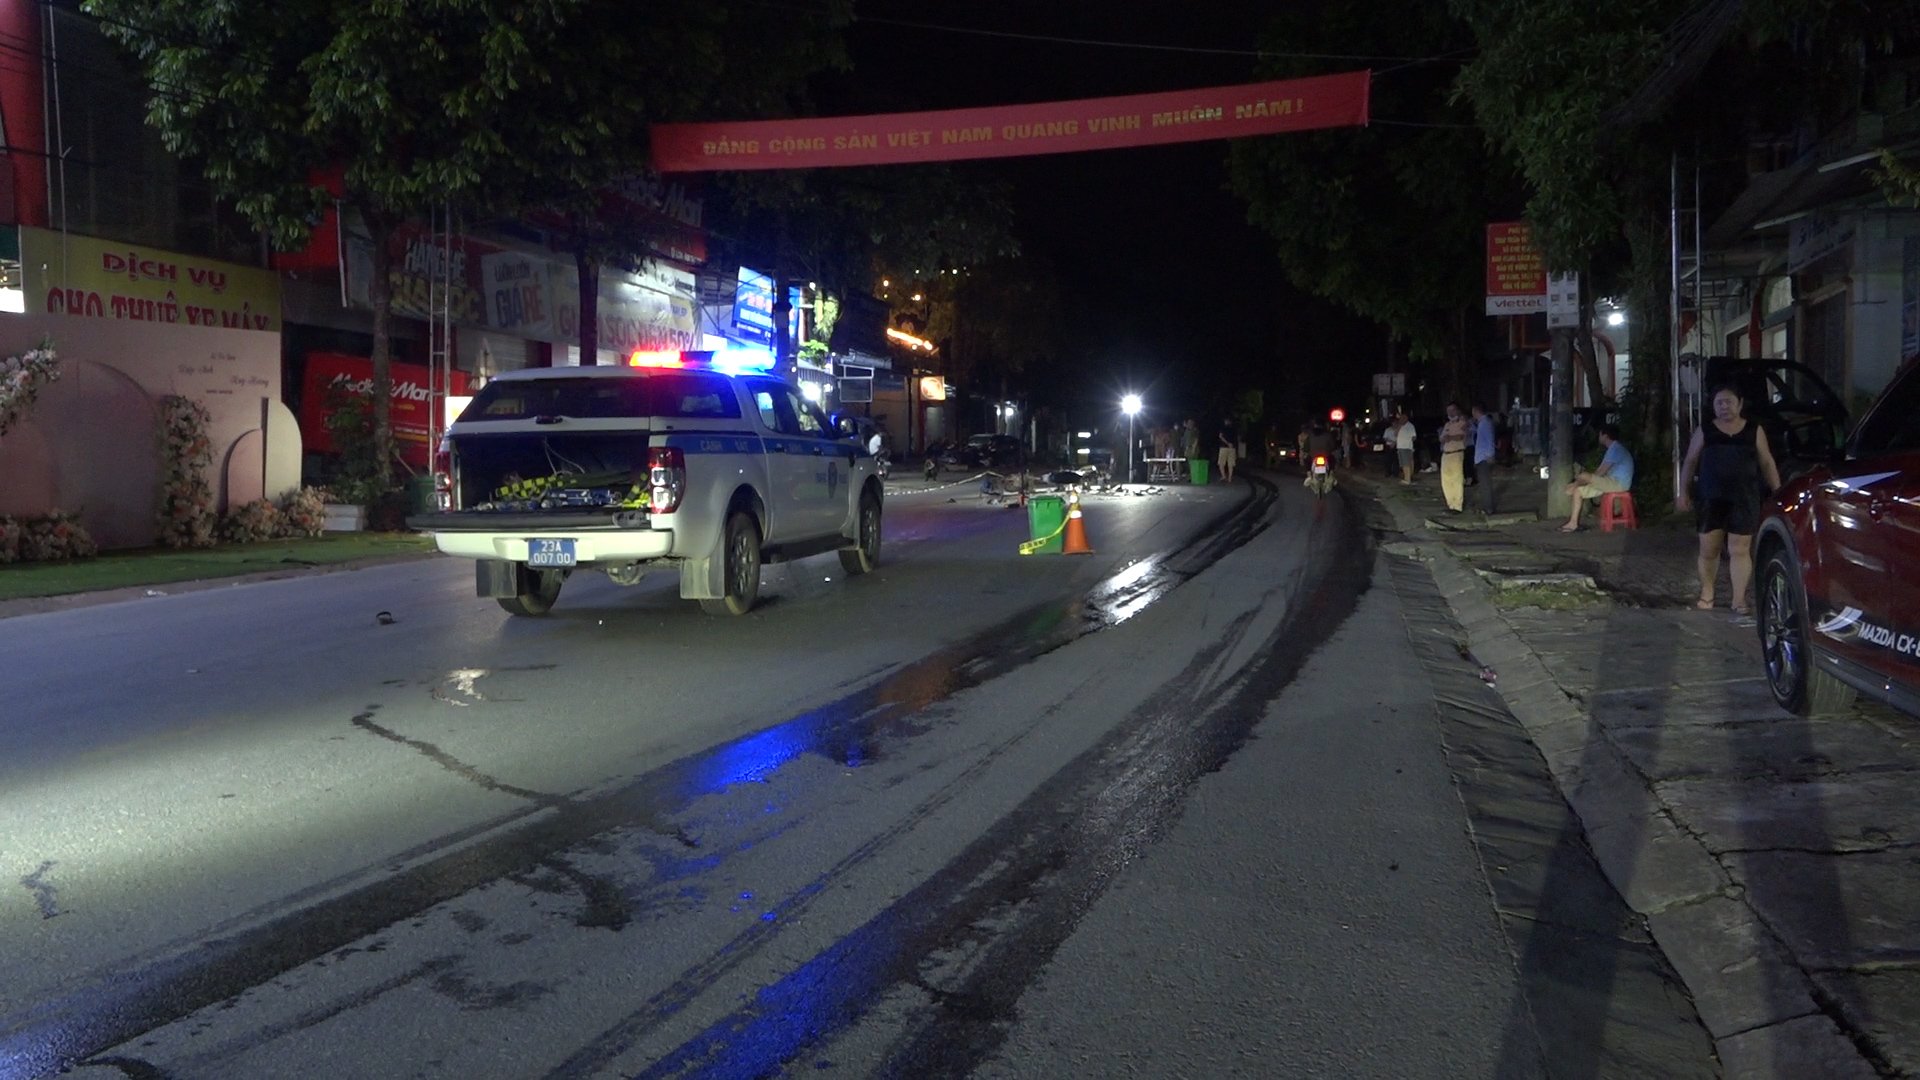 Danh tính 3 người tử vong sau vụ tai nạn nghiêm trọng ở Hà Giang - Ảnh 1.